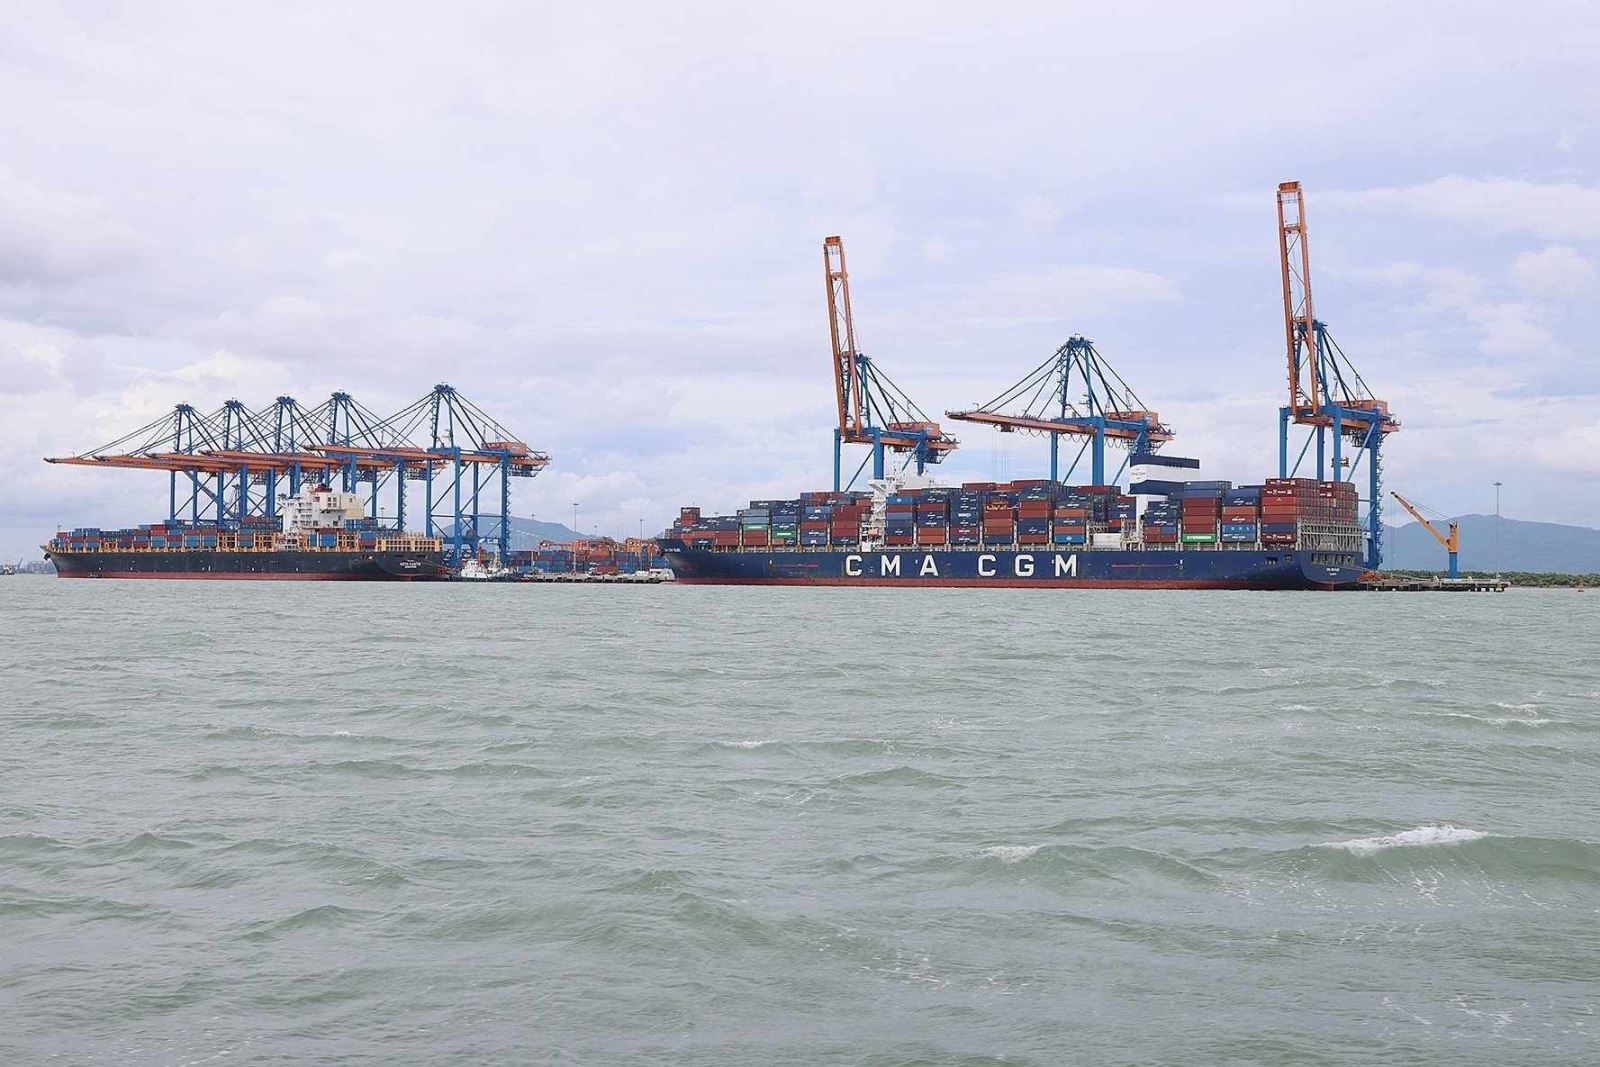 Hoàn thiện đề án xây dựng cảng trung chuyển quốc tế Cần Giờ